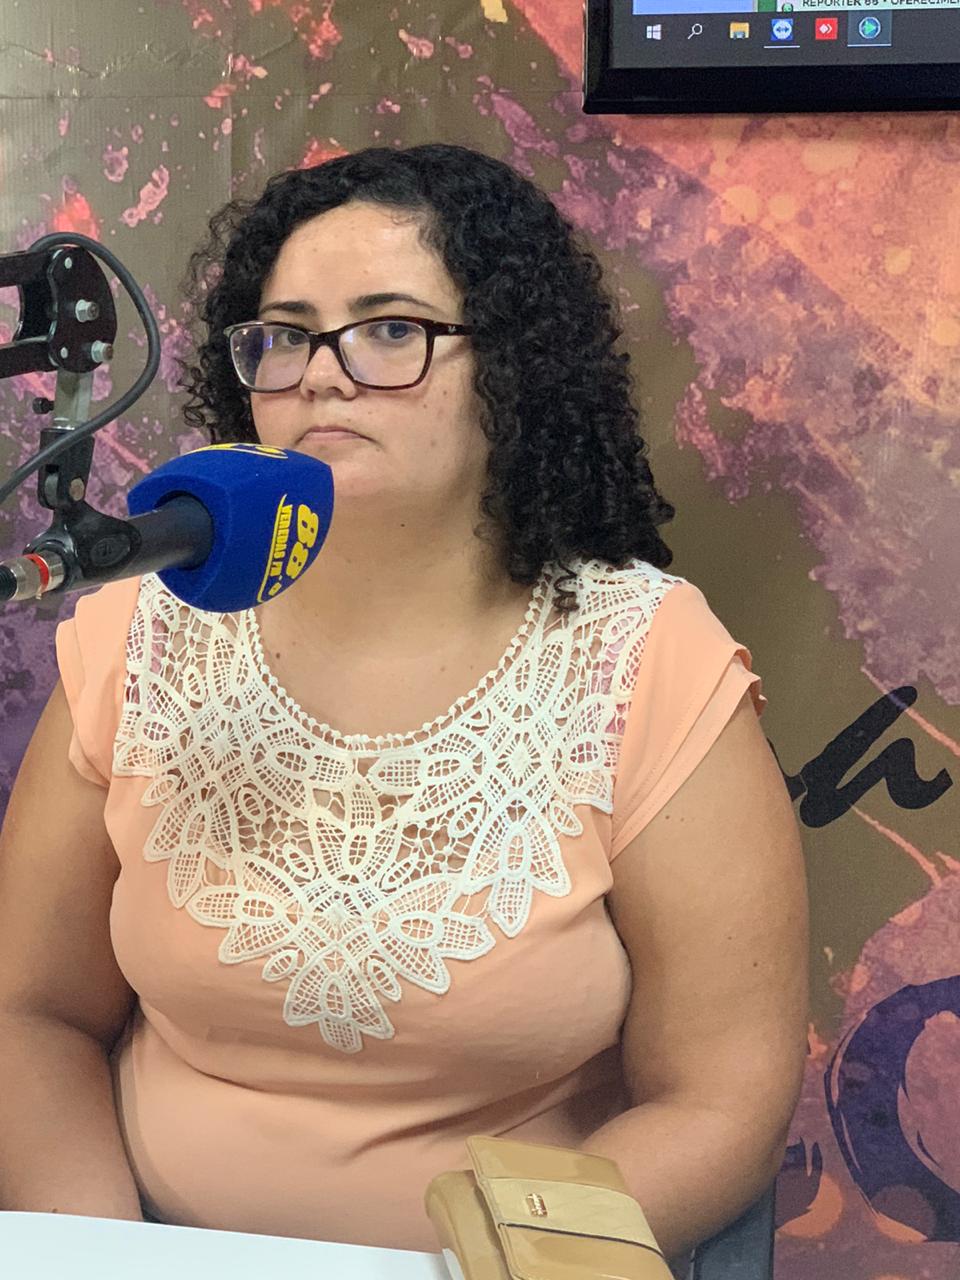 Noticias - Rádio Veredas FM